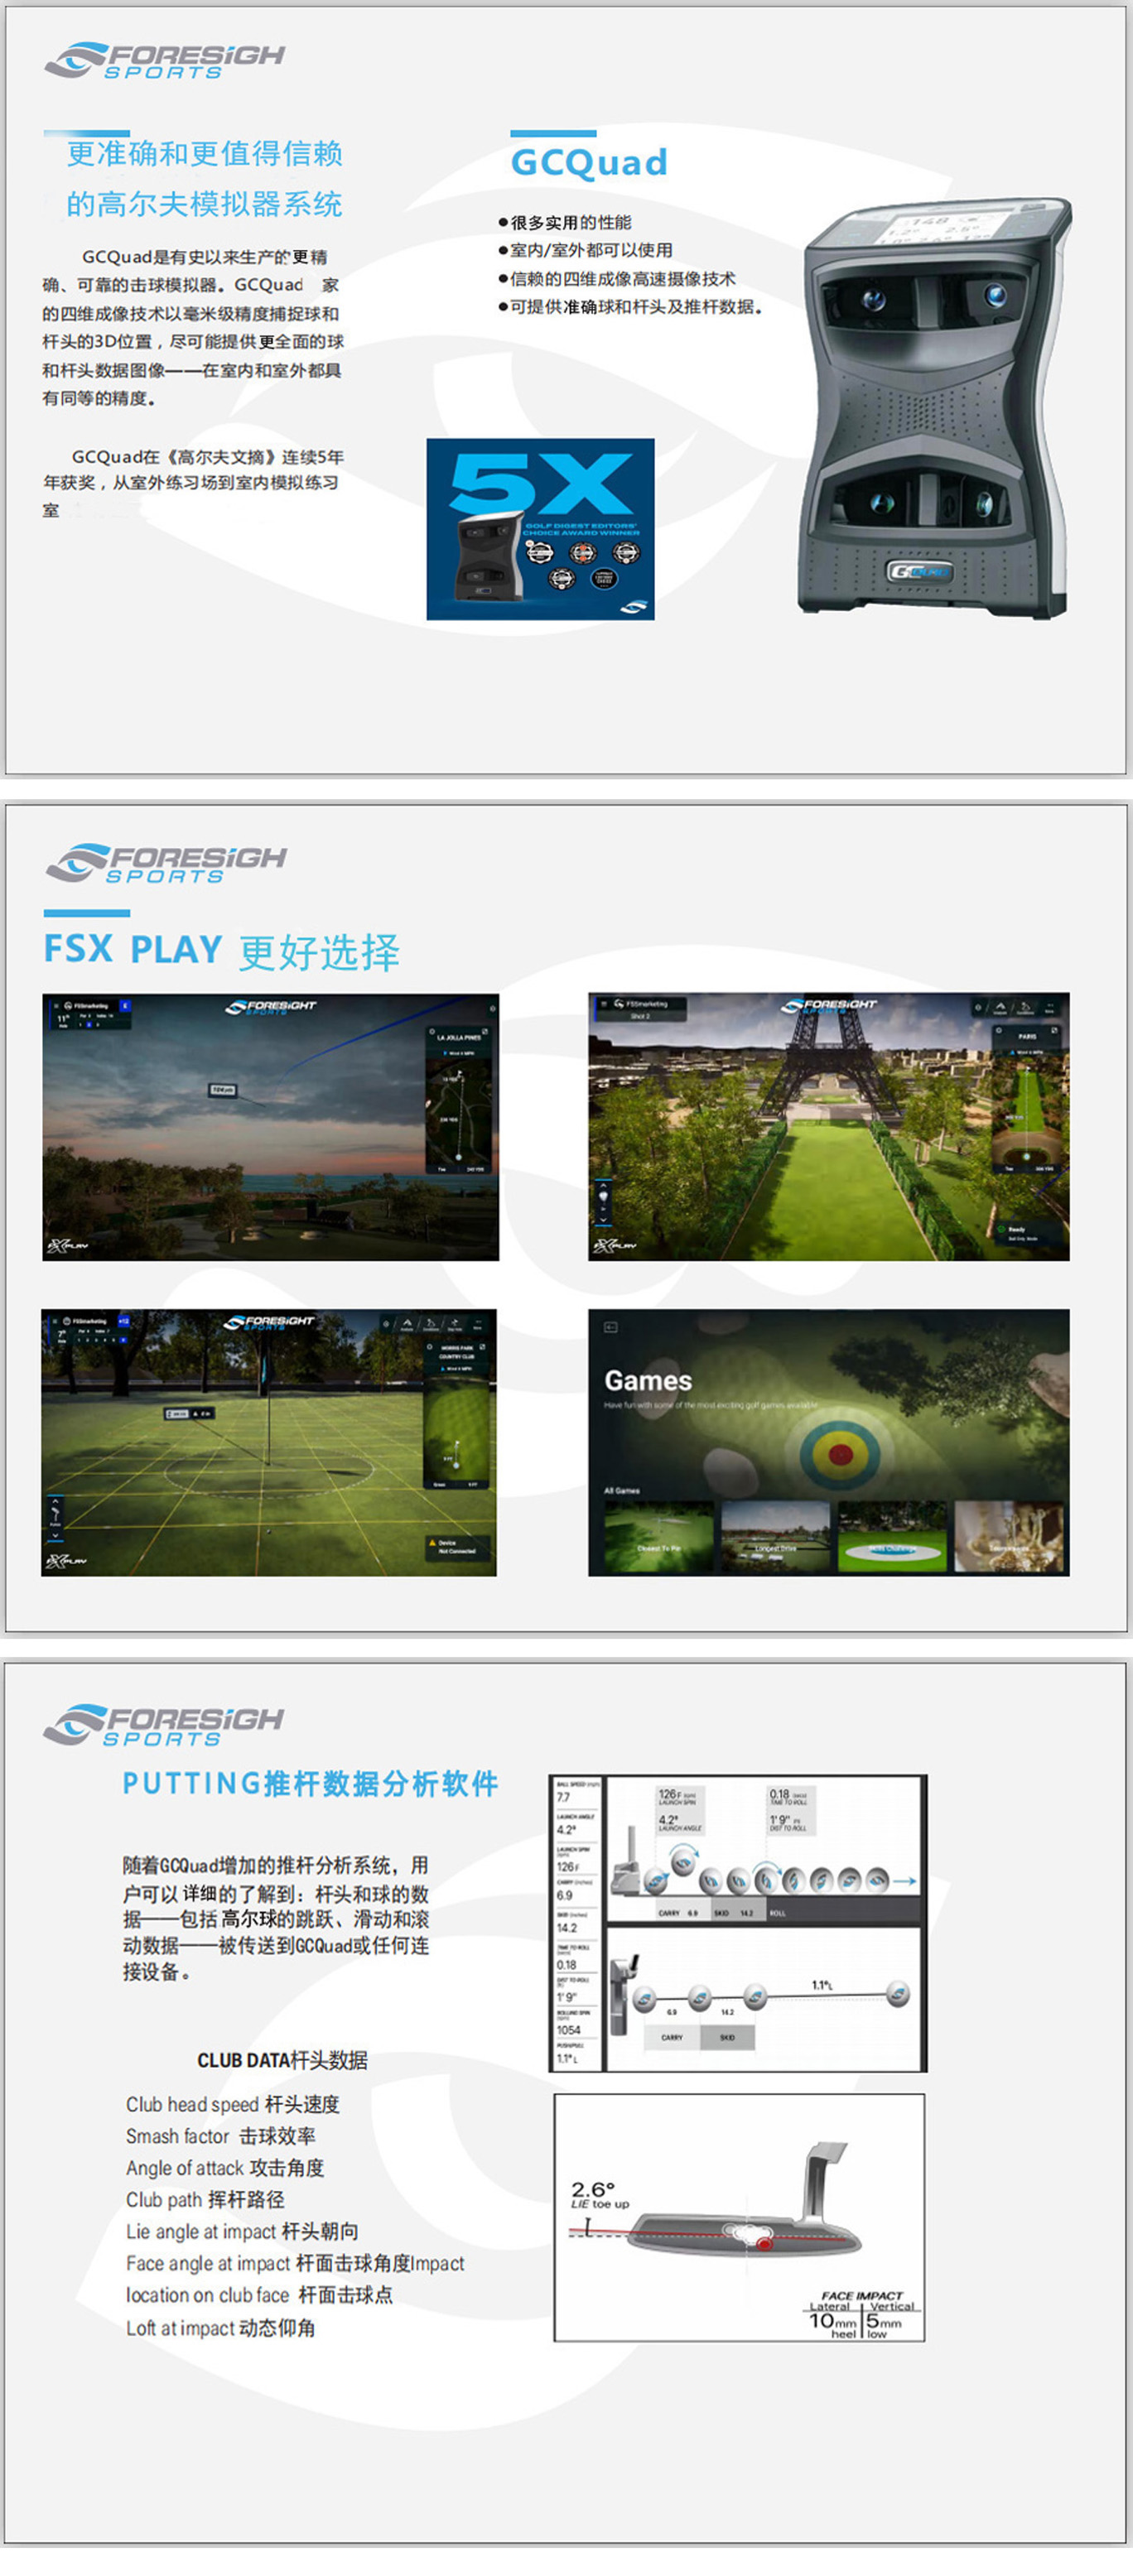 高尔夫模拟设备 03.jpg